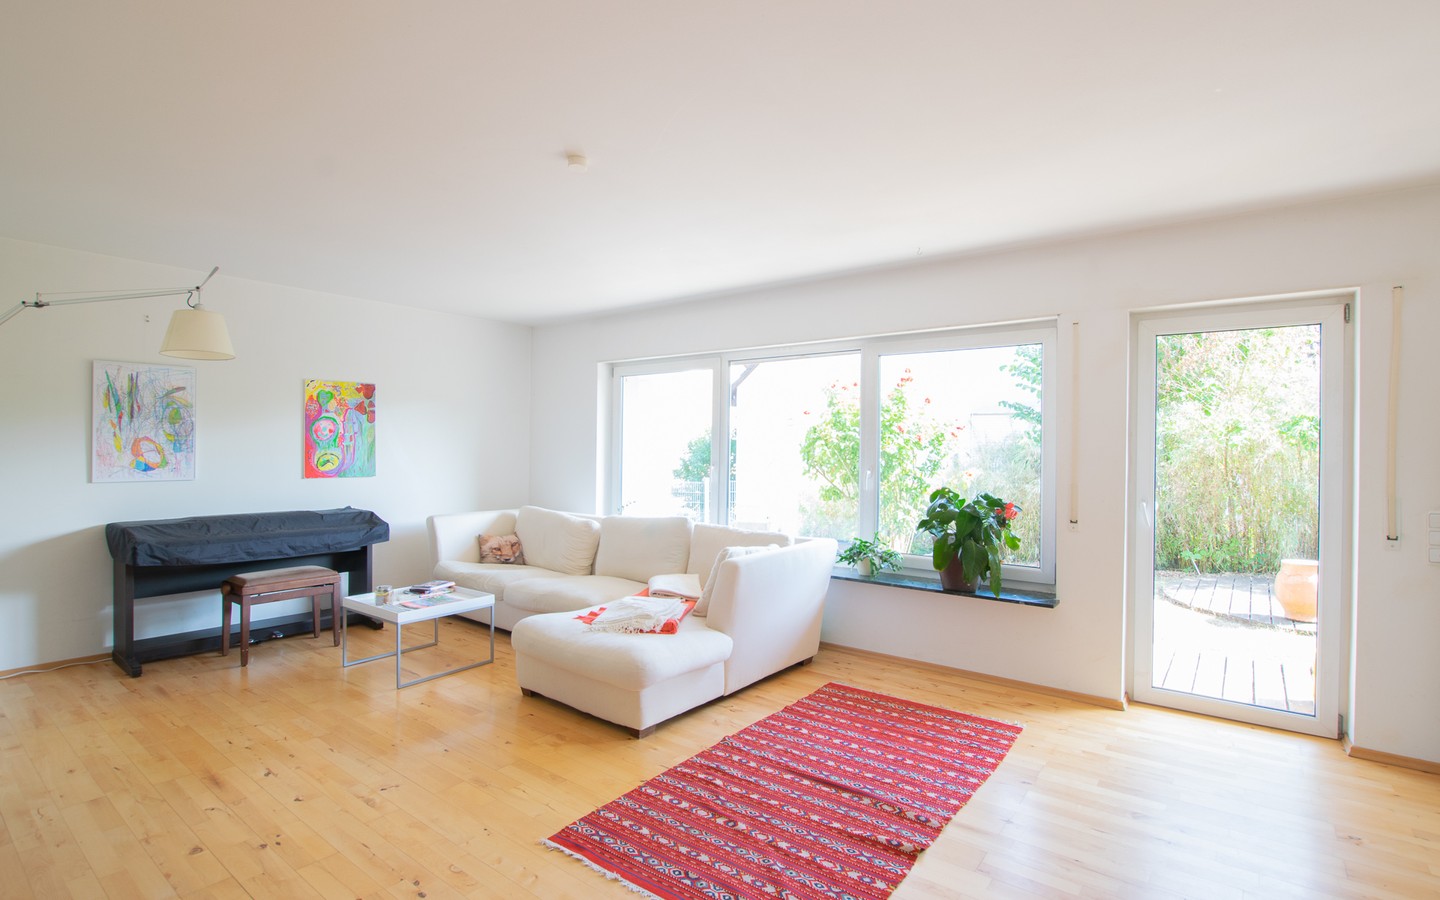 Wohnzimmer - Modernes Einfamilienhaus auf großem Grundstück in ruhiger Lage von Lobenfeld +Virtuelle 3D-Tour+